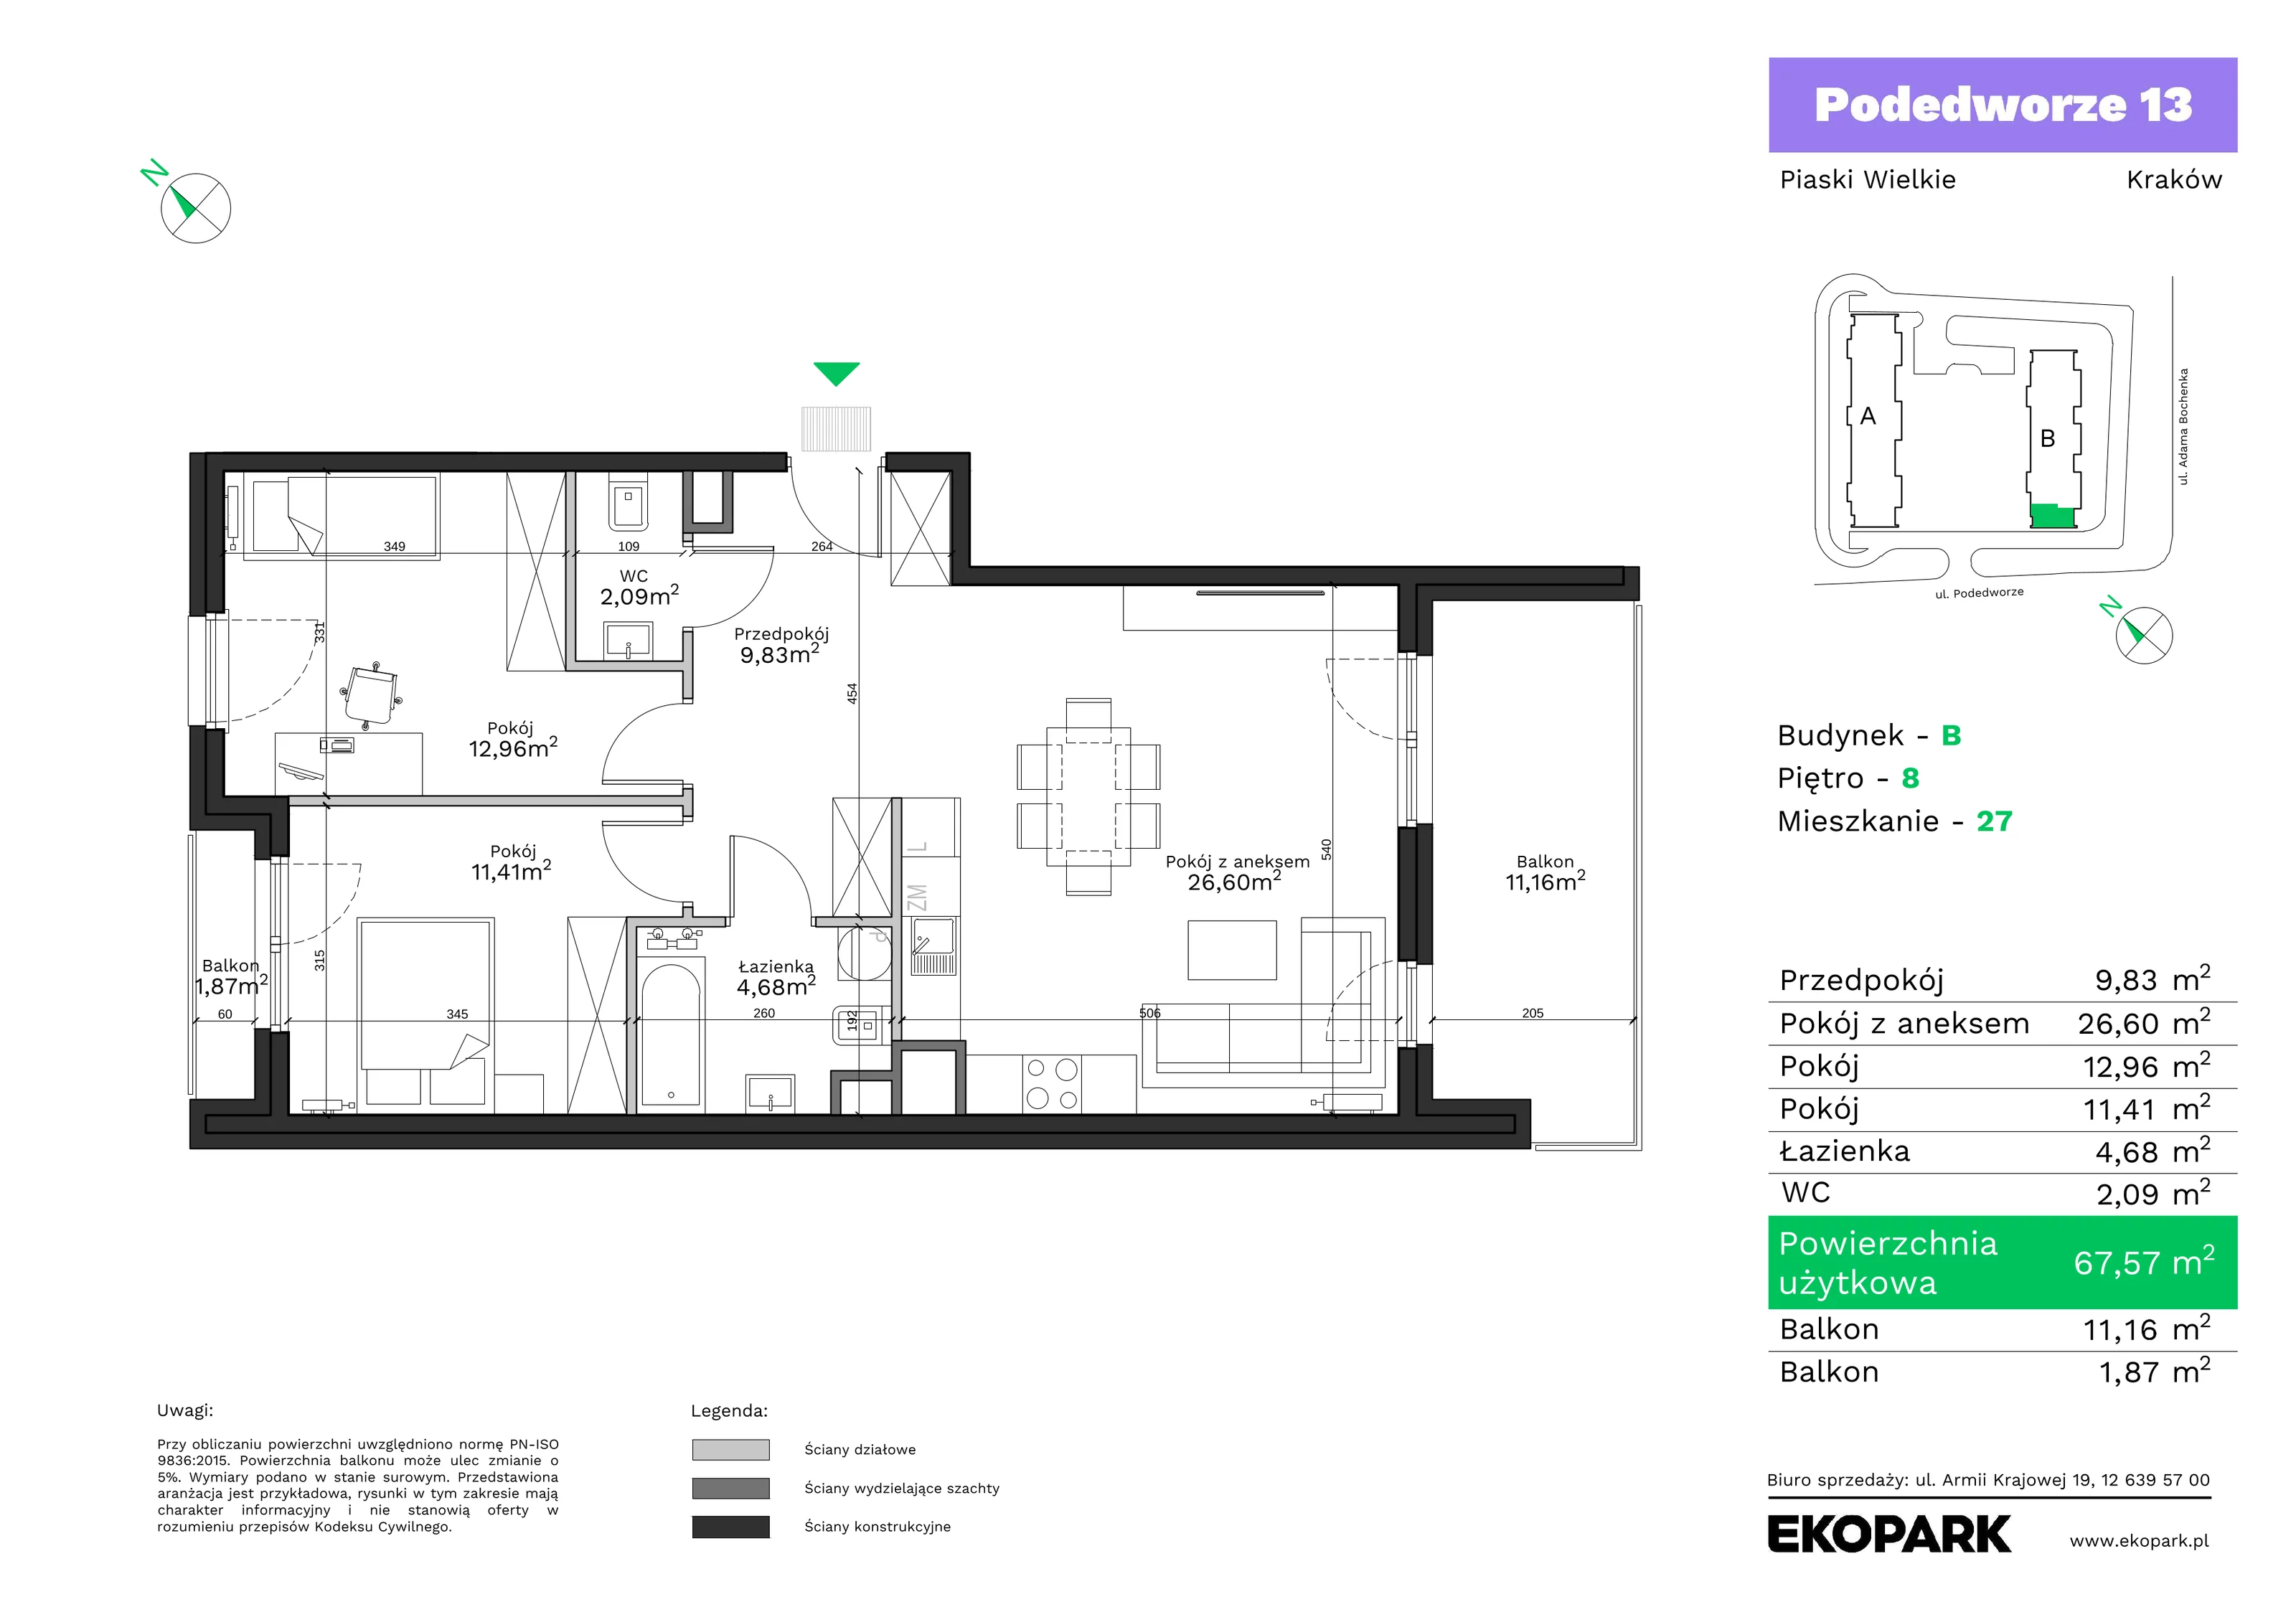 Mieszkanie 67,57 m², piętro 8, oferta nr B27, Podedworze 13, Kraków, Podgórze Duchackie, Piaski Wielkie, ul. Podedworze 13